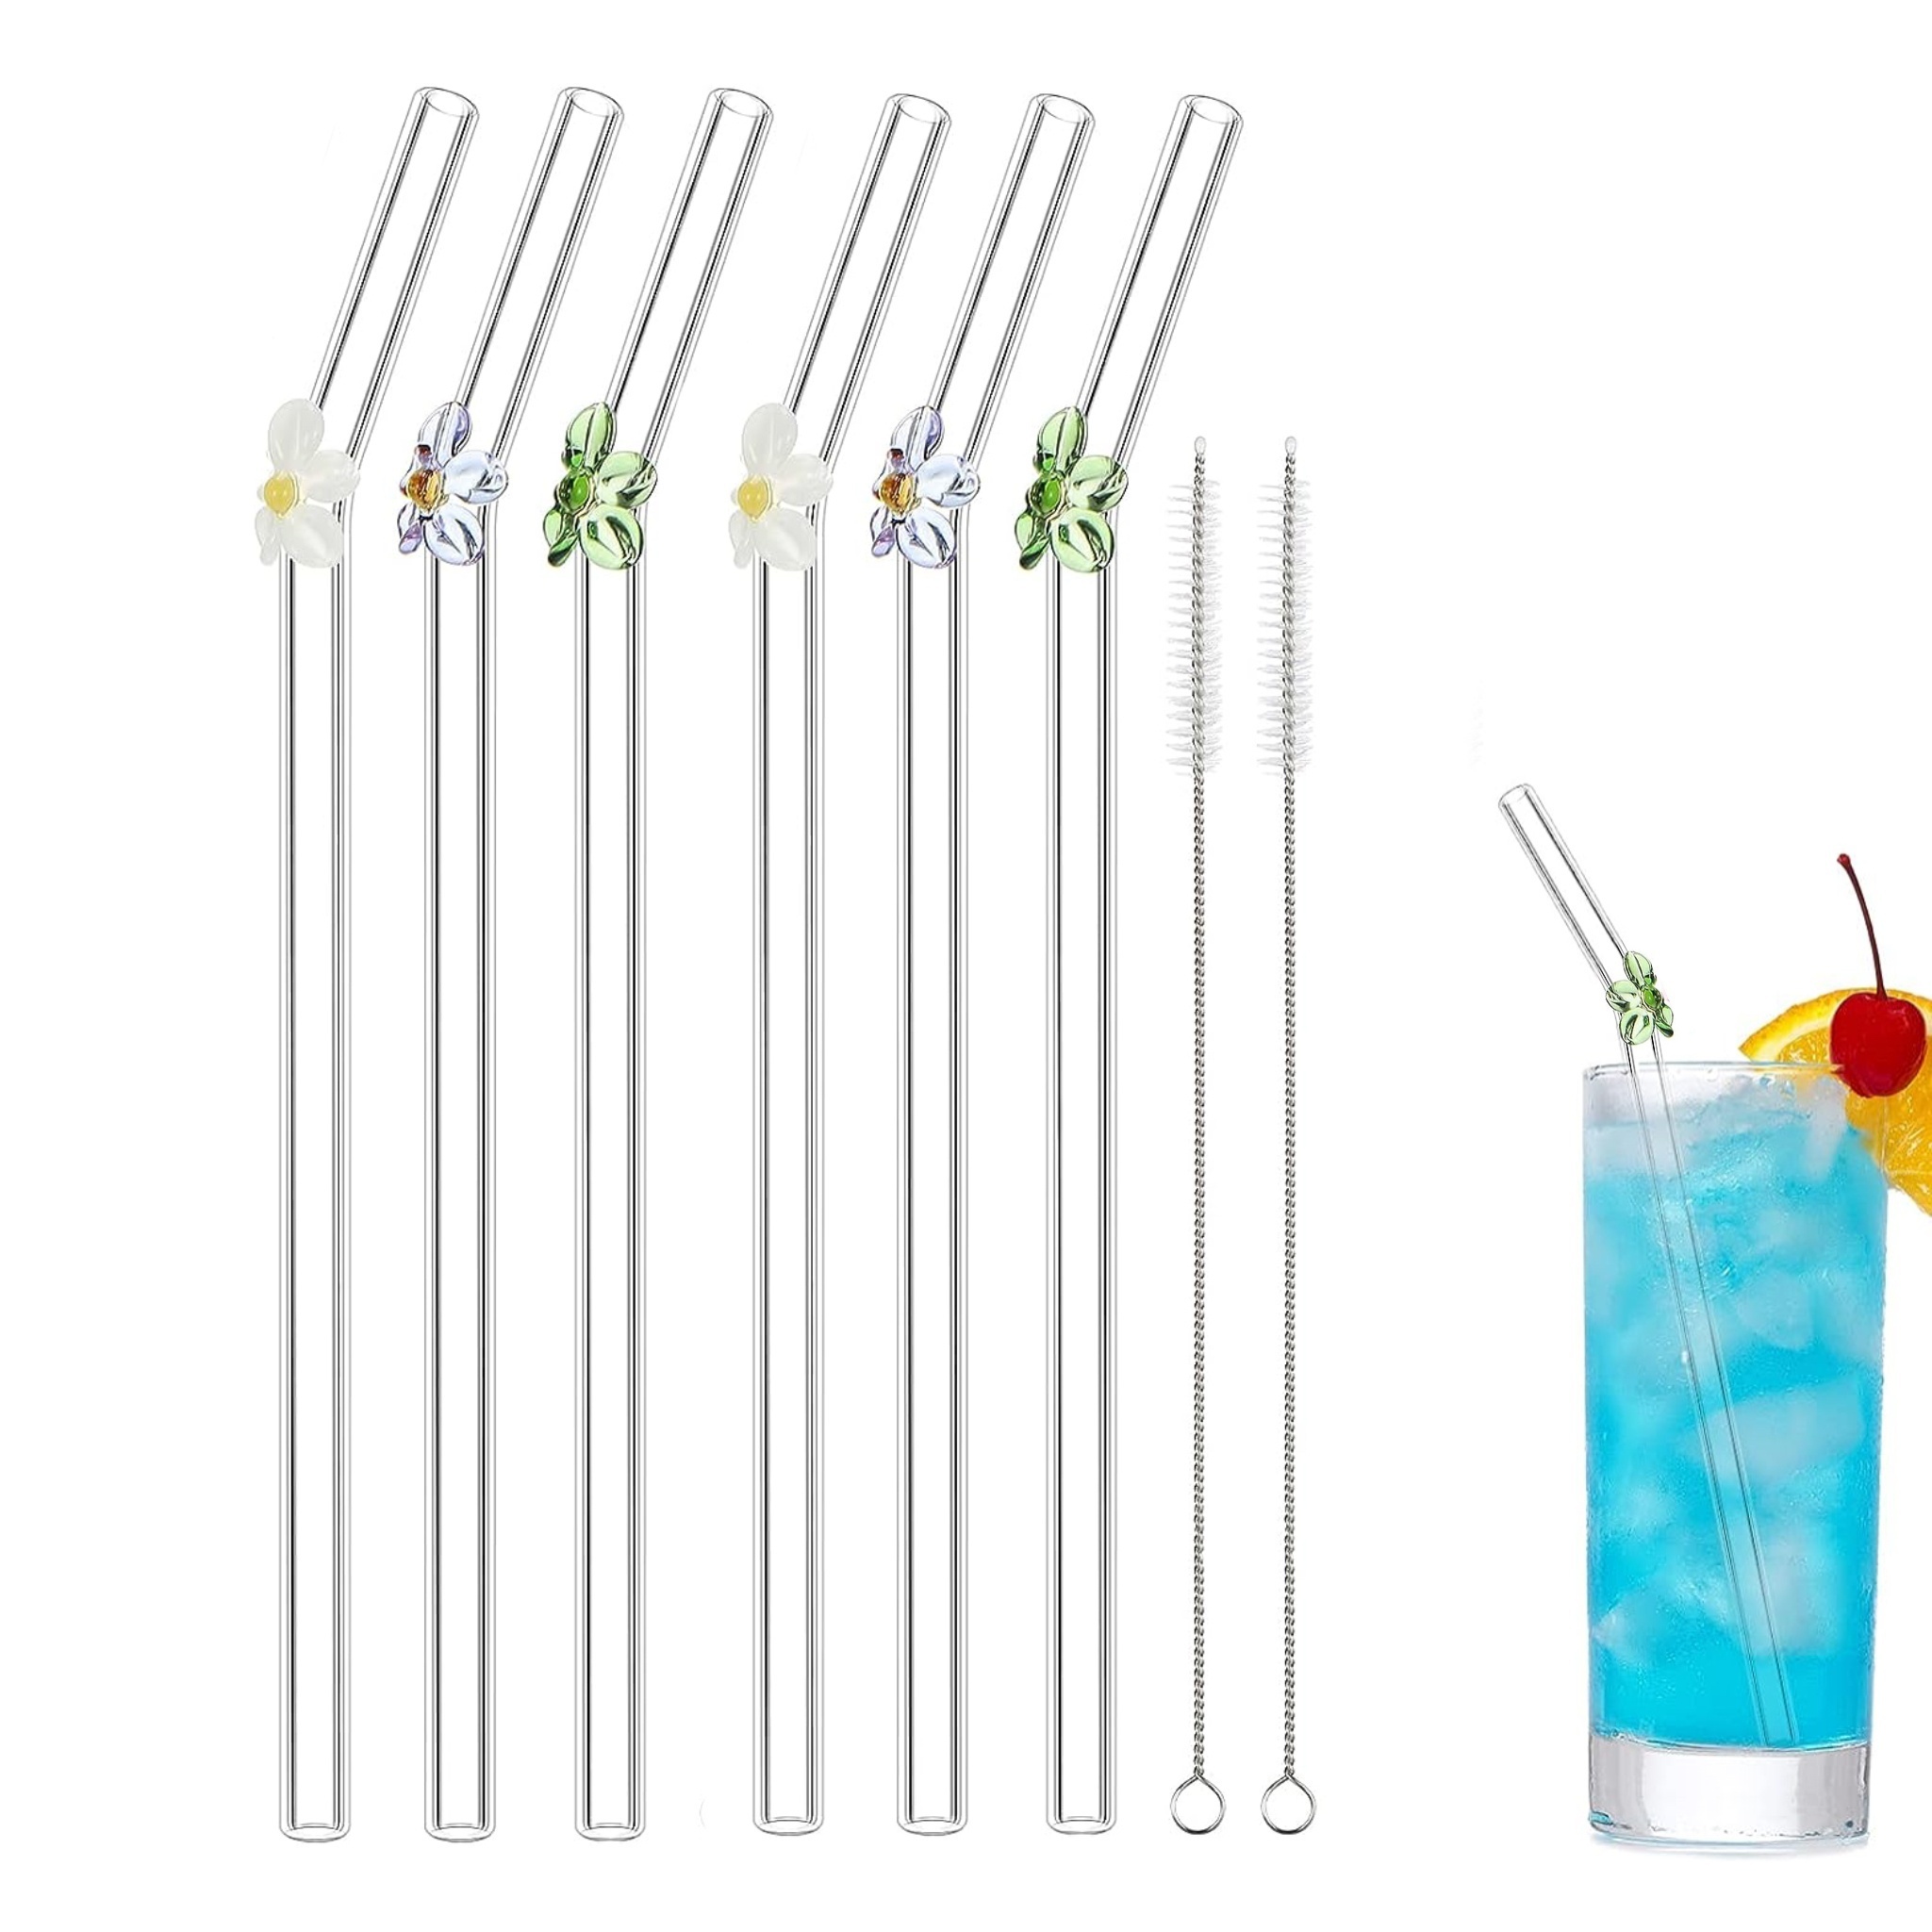 Flower GLASS STRAW - Boba Straws, Smoothie Straws